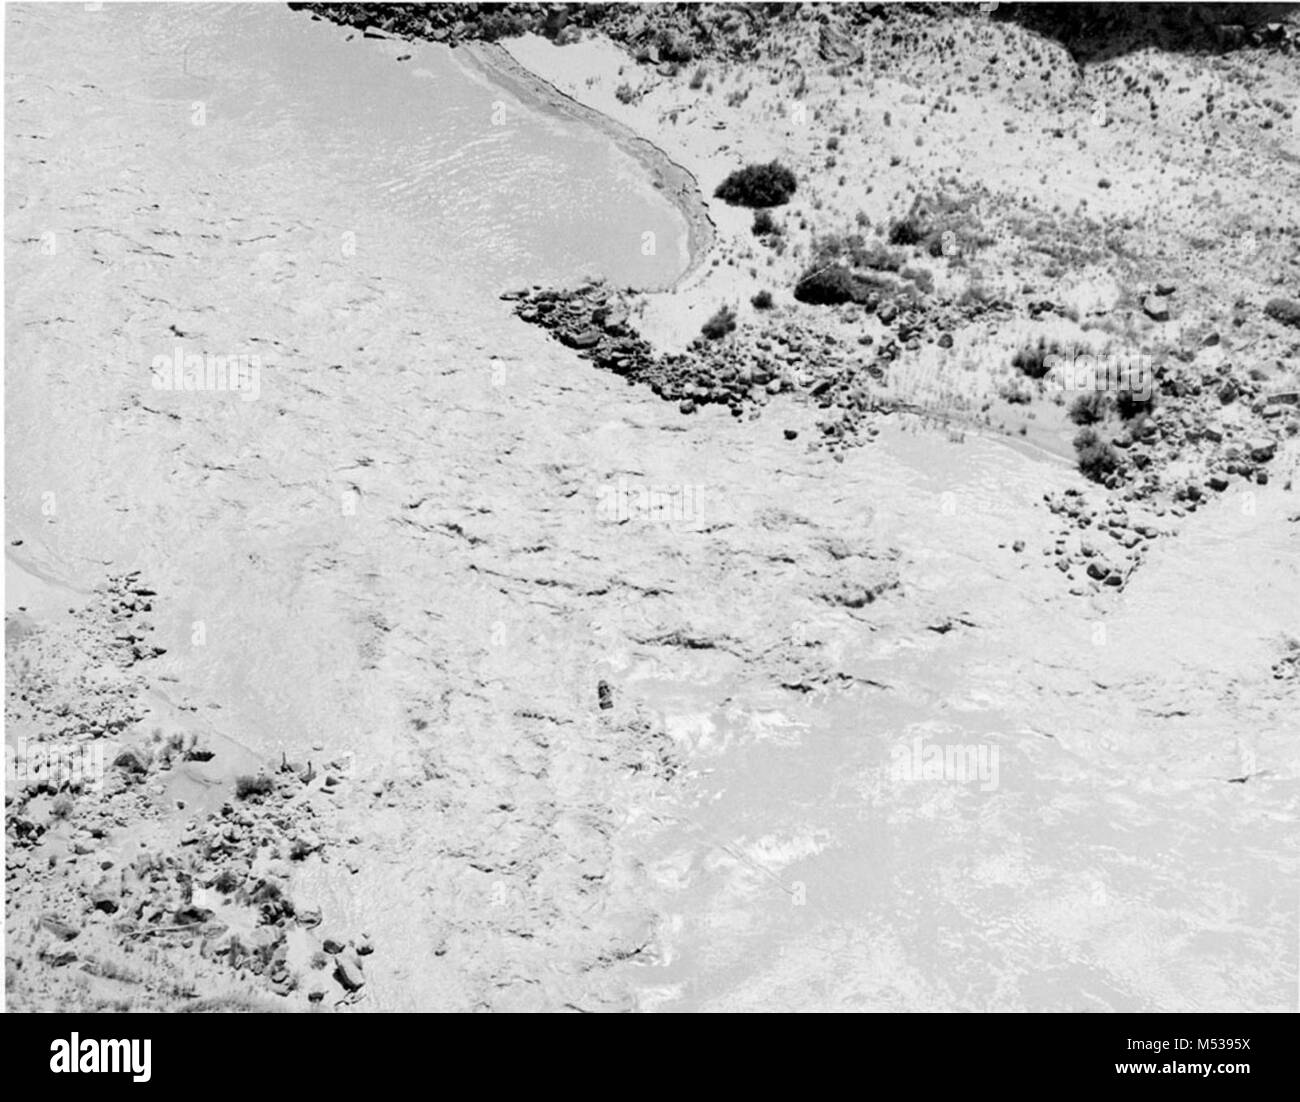 Il motoscafo, ESMERALDA II, DI ED Fiume Hudson partito, è mostrato entrando BADGER CREKK rapido, ad una breve distanza al di sotto del ponte Navajo sulla Highway 89. Questa è stata la prima imbarcazione per rendere il viaggio da Lee al traghetto per il Lago Mead. Il viaggio è stato reso giugno 12-17, 1949. Fotografo J.M. EDEN. CIRCA 1949. Grand Canyon Parco Nat storica sul fiume foto. Foto Stock